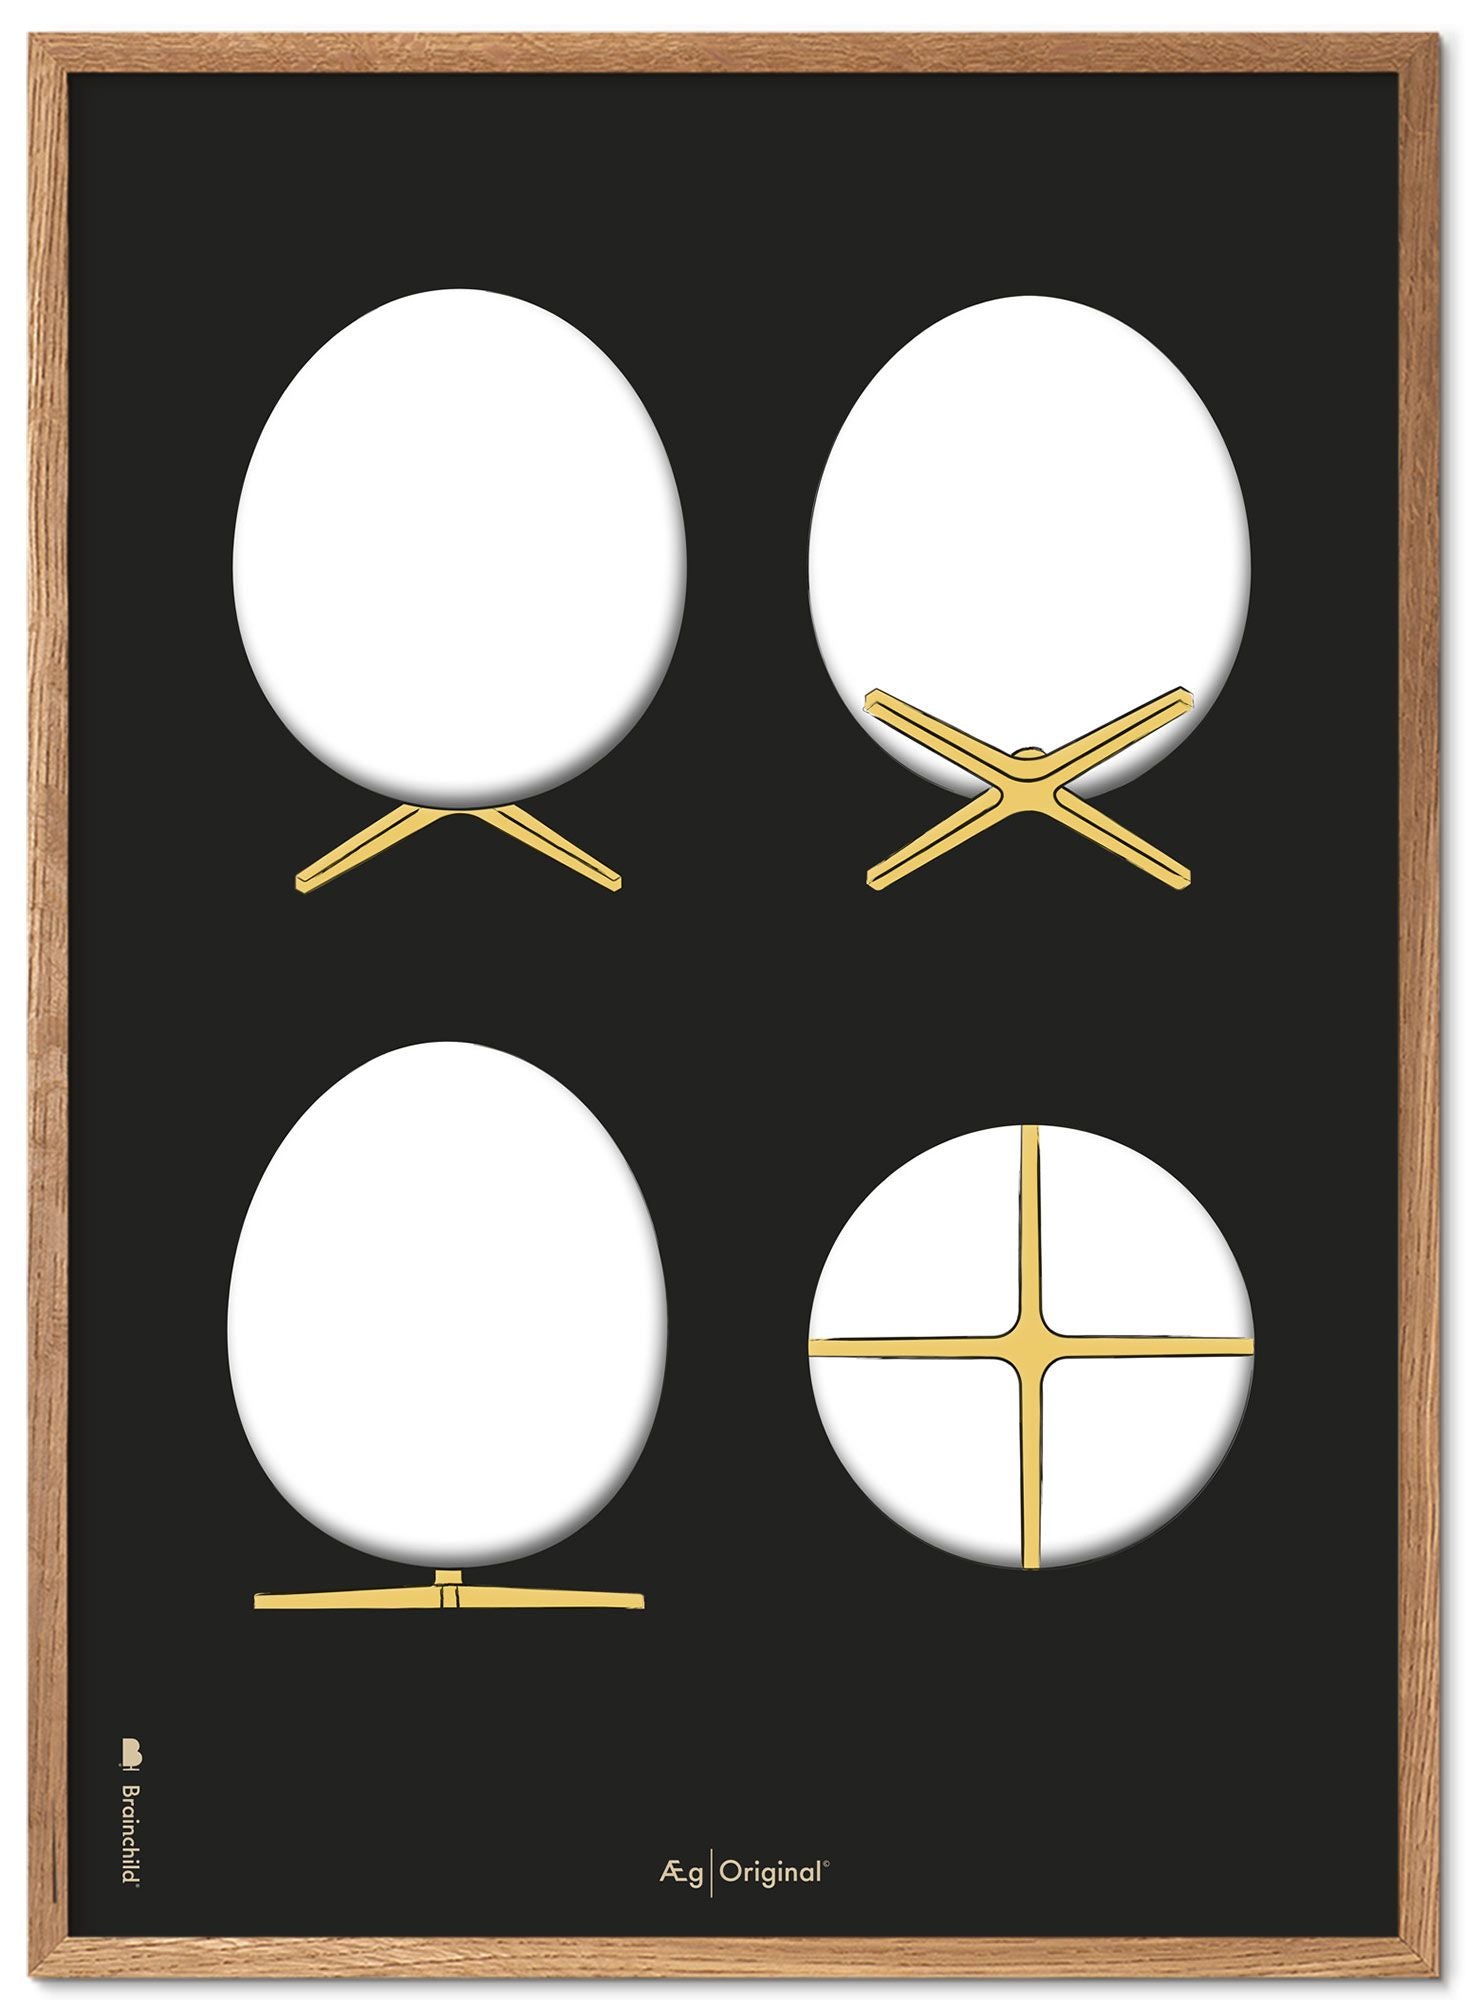 Brainchild Het ei ontwerp schetst posterframe gemaakt van licht hout A5, zwarte achtergrond